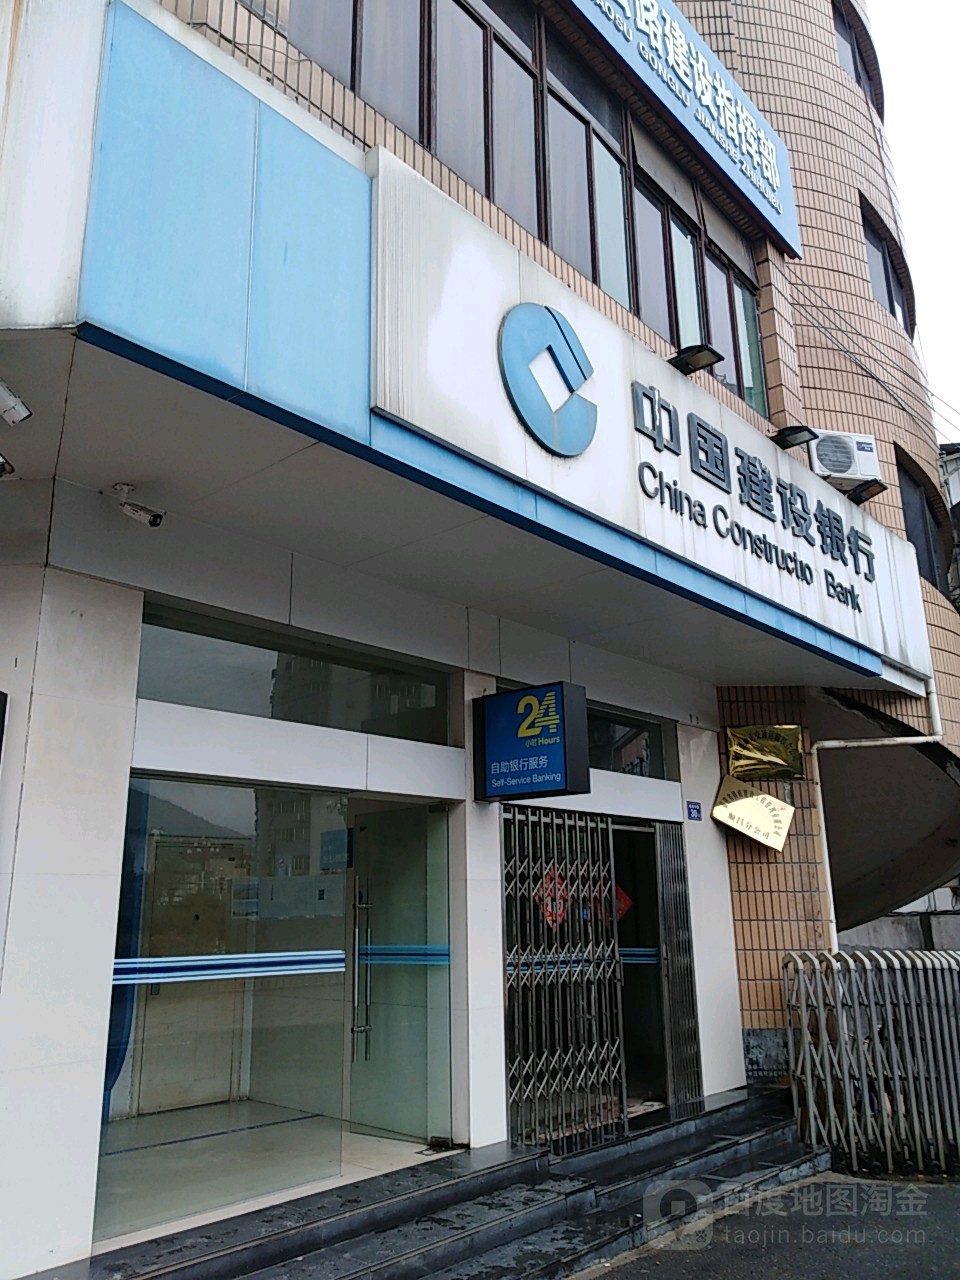 中國建設銀行24小時自助銀行服務(順昌縣新型農村合作醫療管理中心西南)